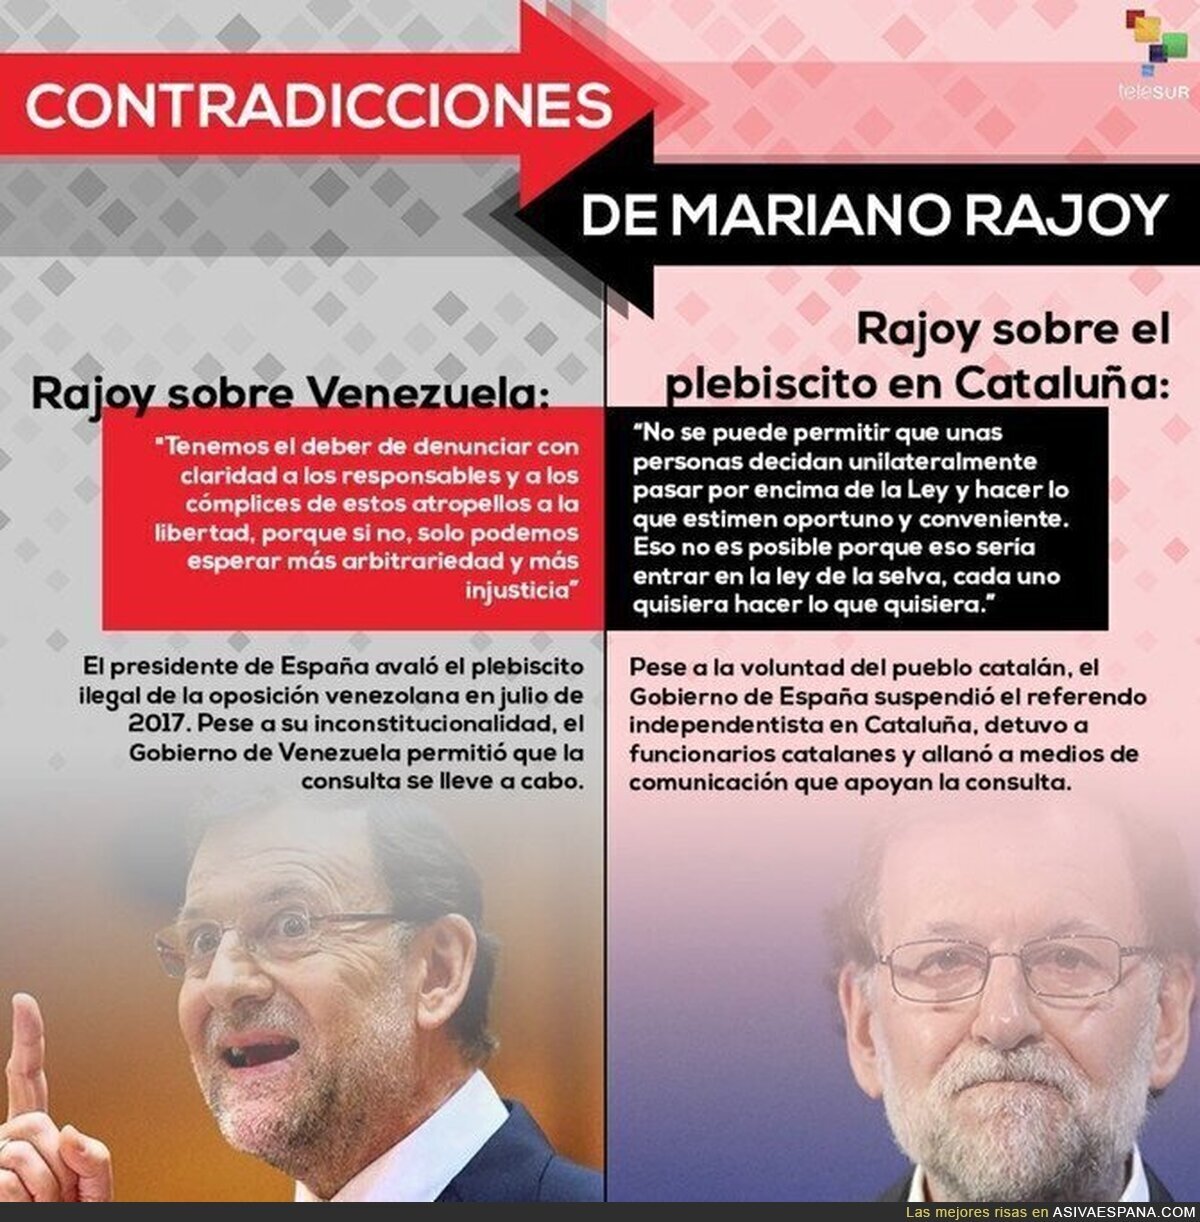 Rajoy y los referéndum